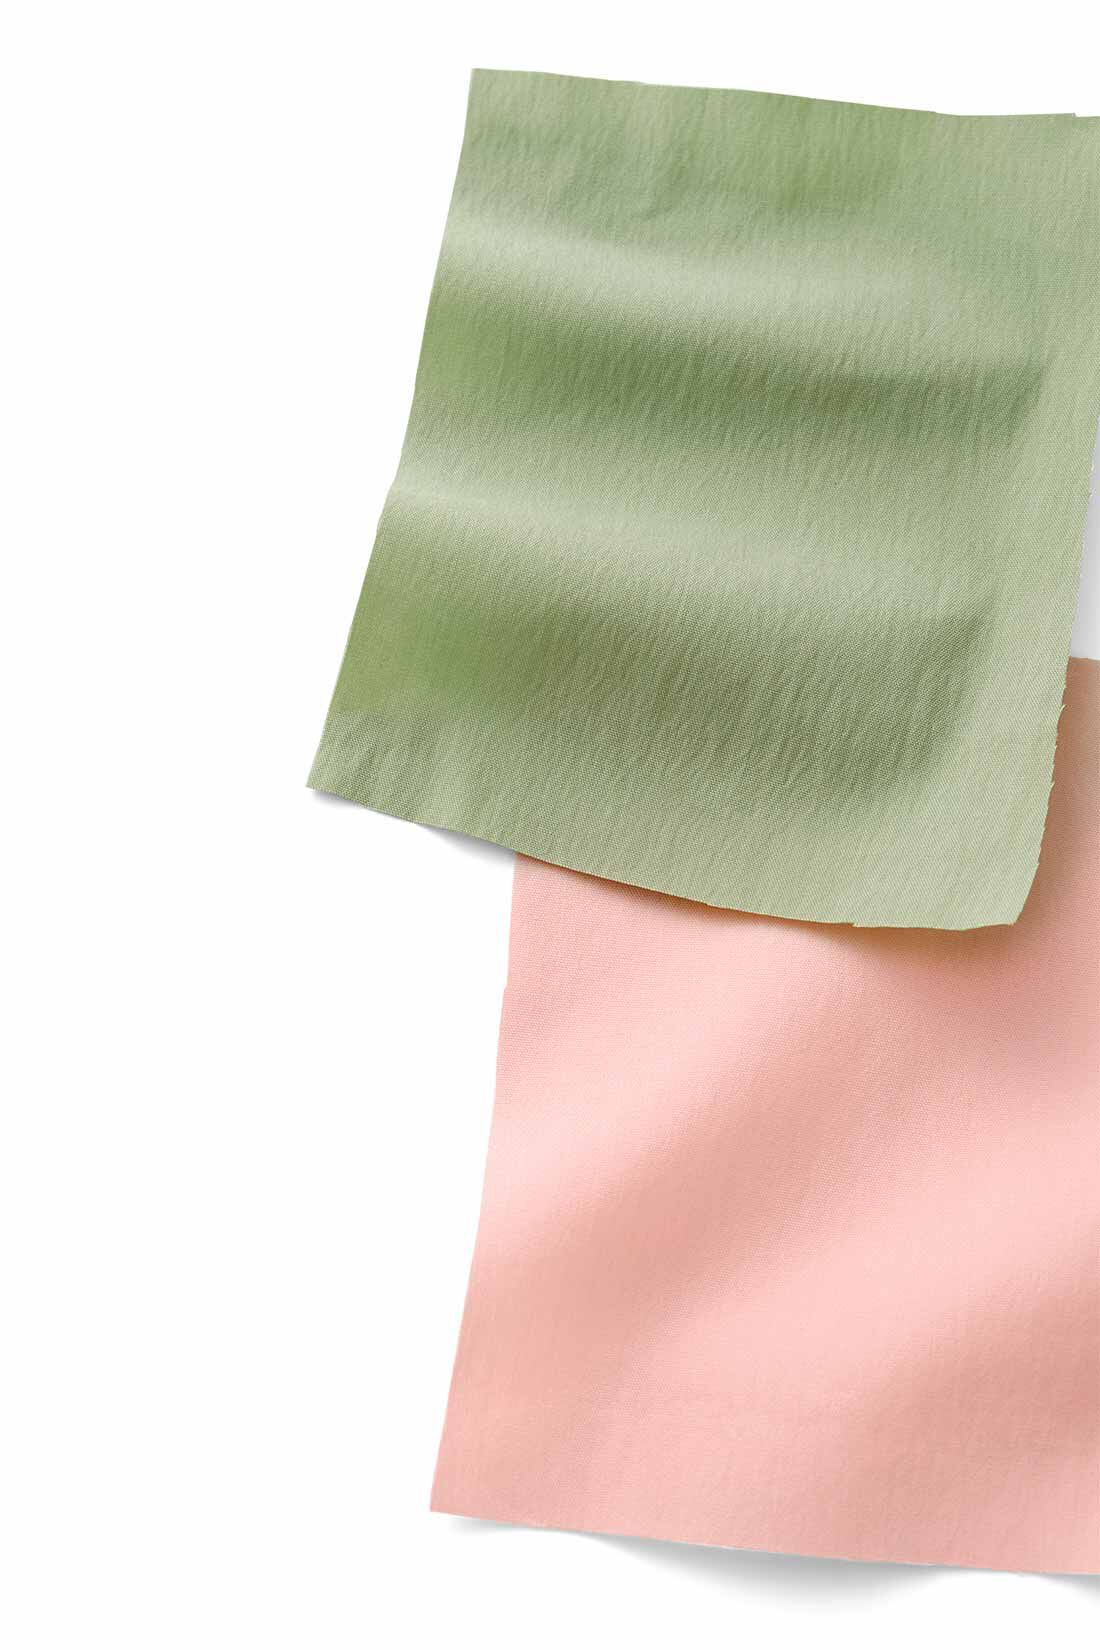 MEDE19F|MEDE19F　パラシュート型パンツ〈ピンク〉|かすかなシボ感と張り感が特徴的な、綿・ナイロン混素材。